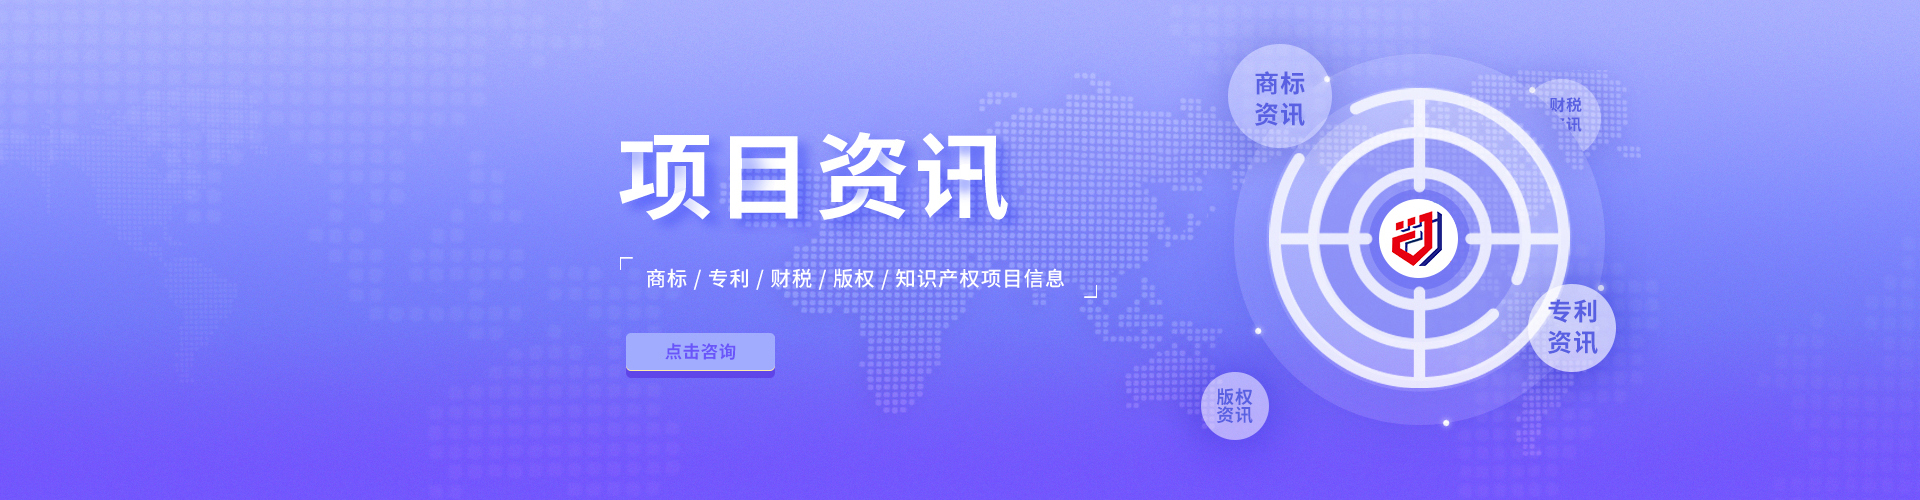 第一届中国知识产权学术年会在京召开